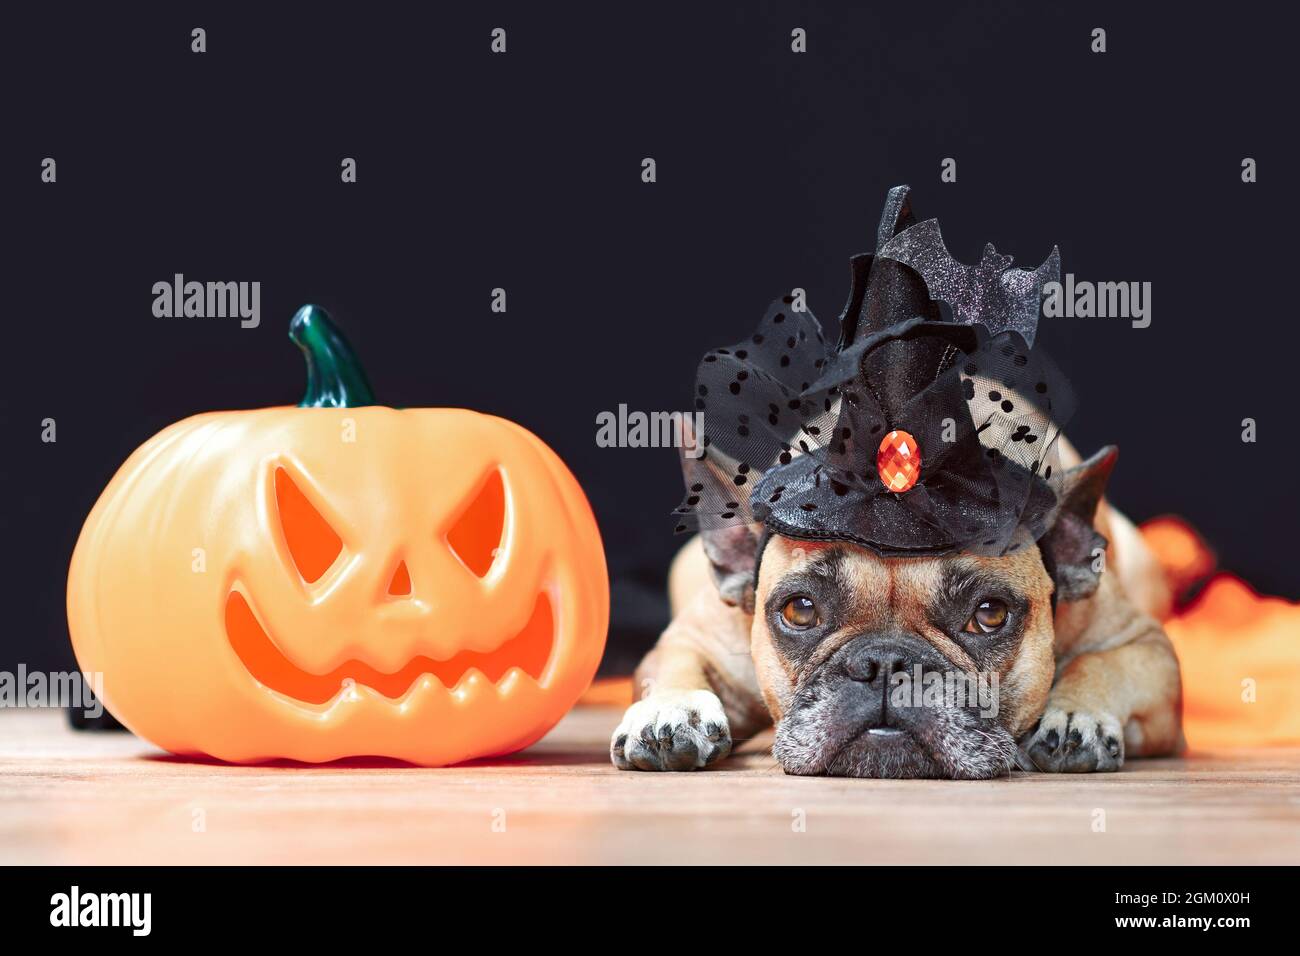 Französischer Bulldogge Hund mit Halloween Hexenhut neben geschnitztem Kürbis, der vor schwarzem Hintergrund liegt Stockfoto